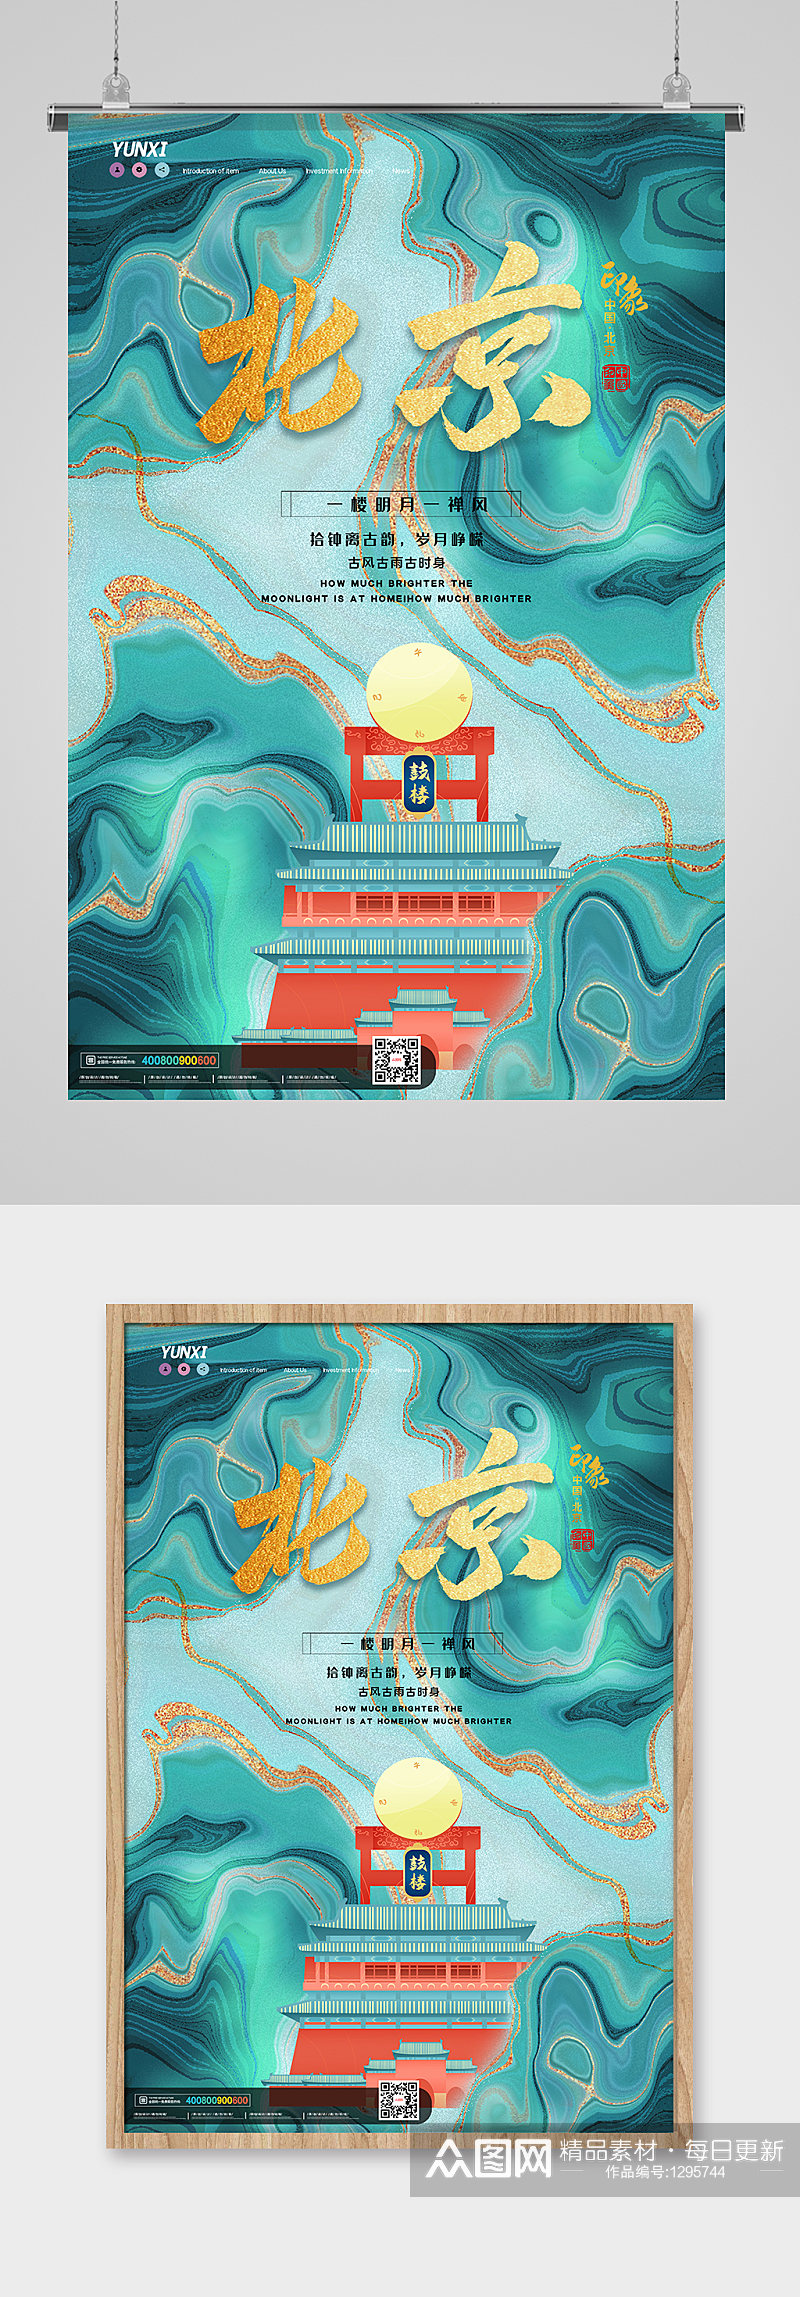 创意北京标志建筑海报素材